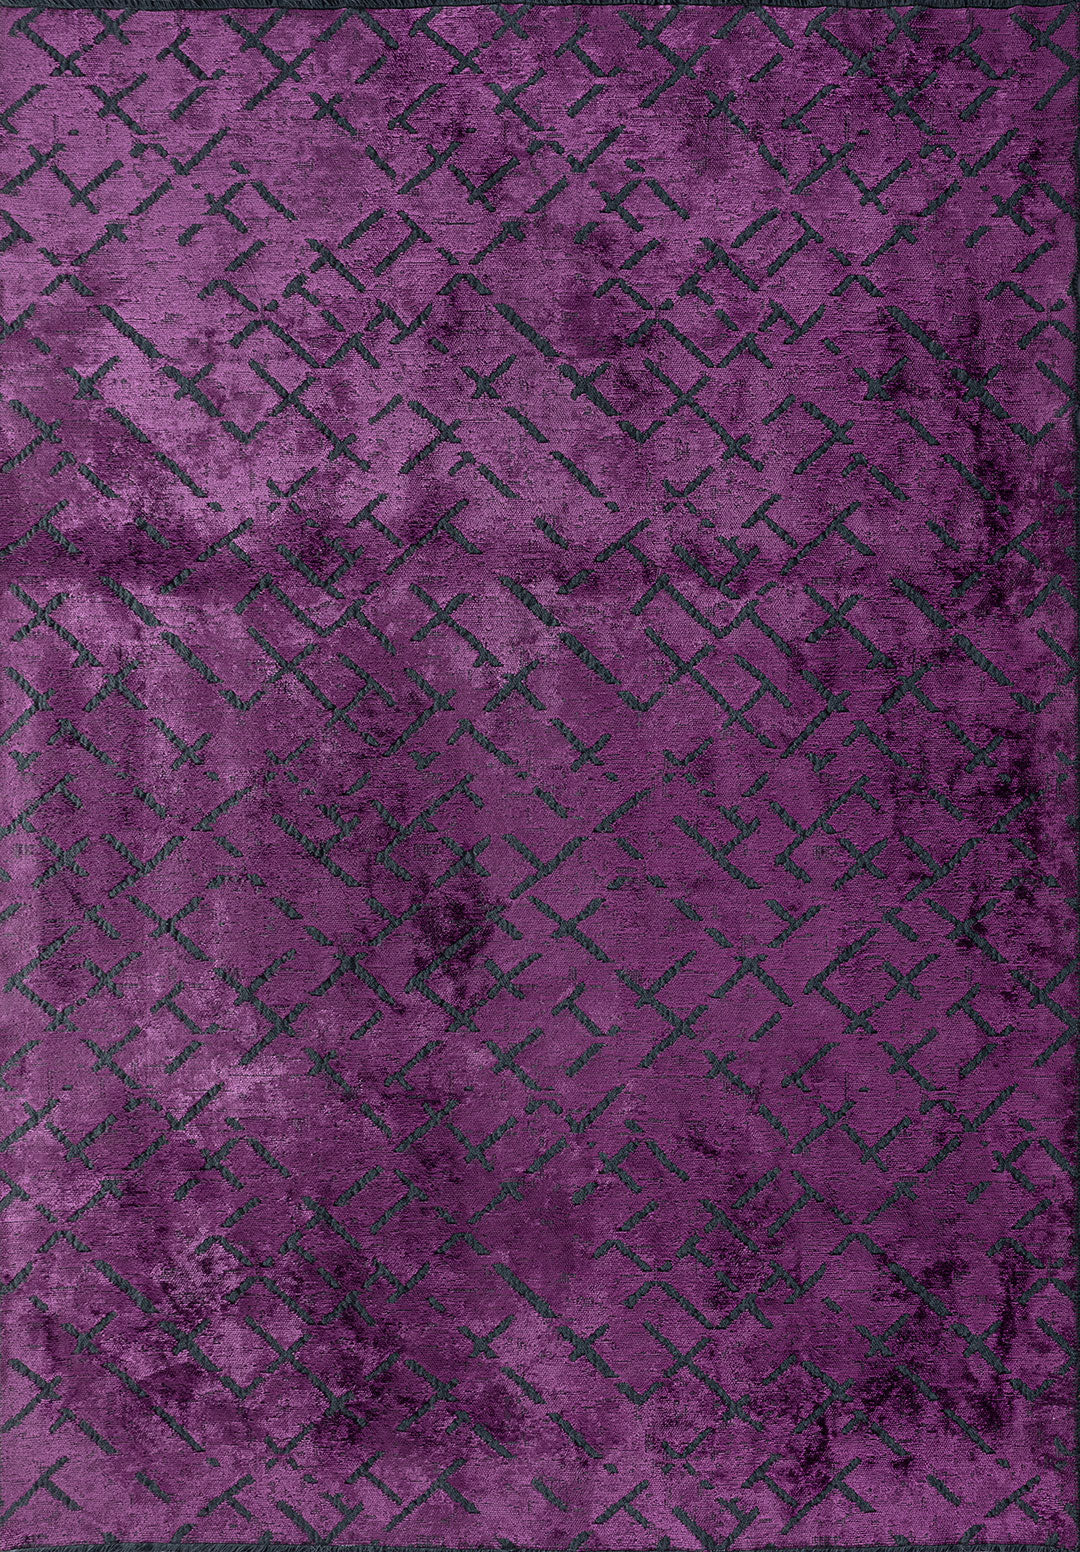 Mystique Purple Rug Rugs - Venetto Design Venettodesign.com